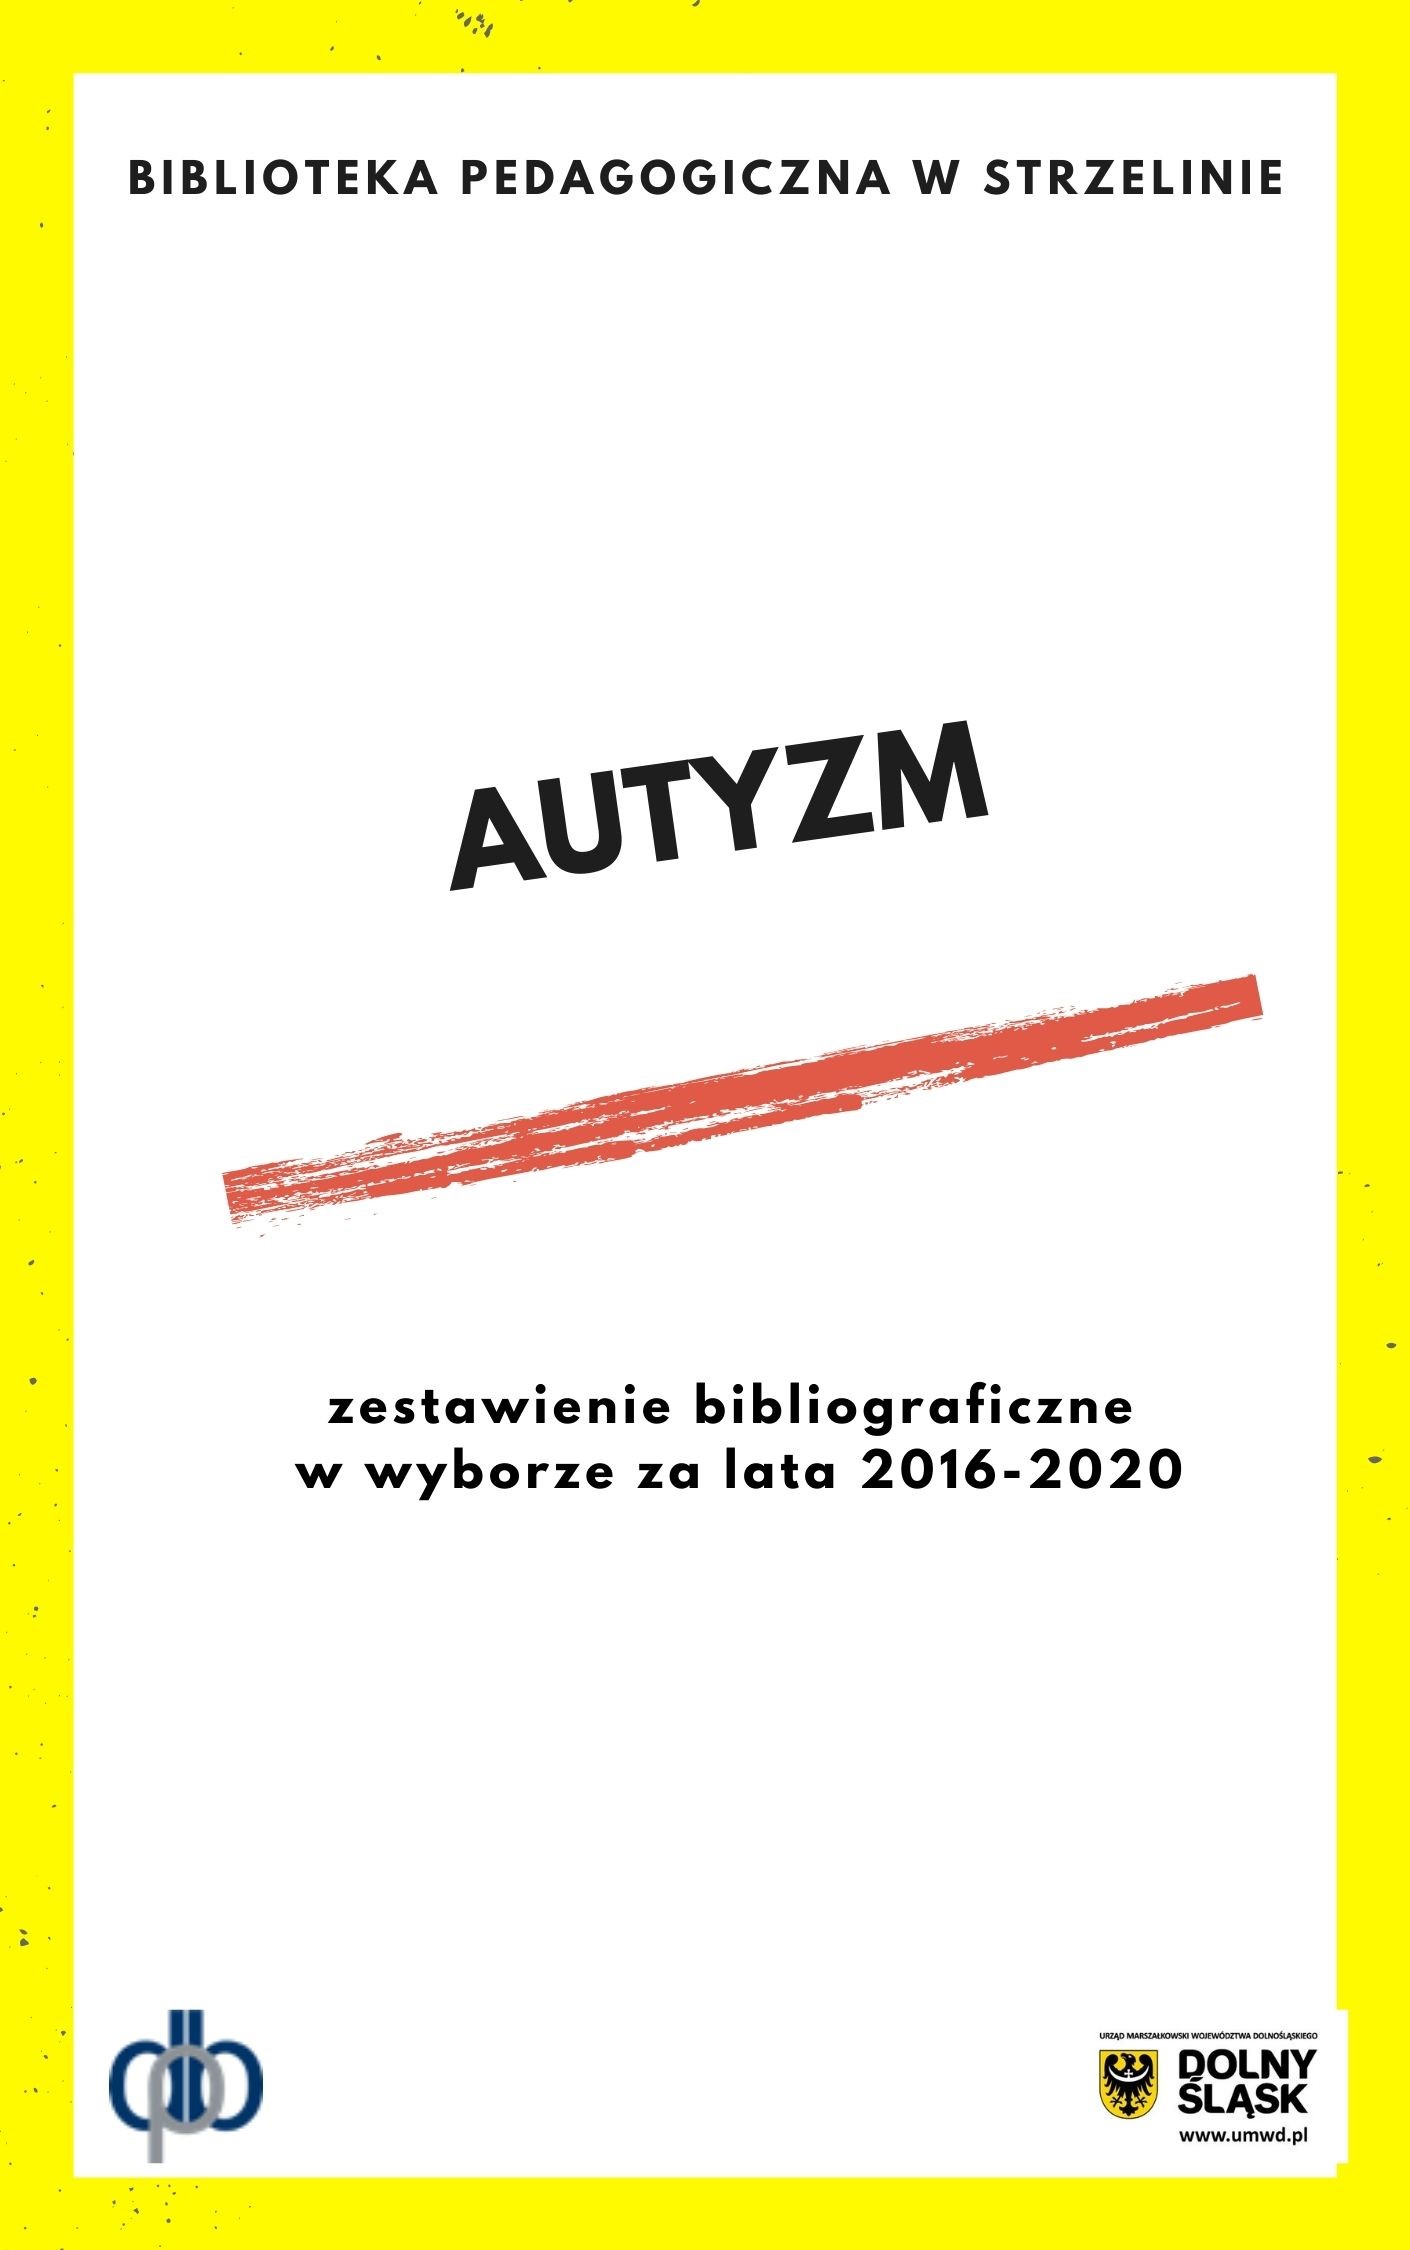 Autyzm: zestawienie bibliograficzna za lata 2016-2020